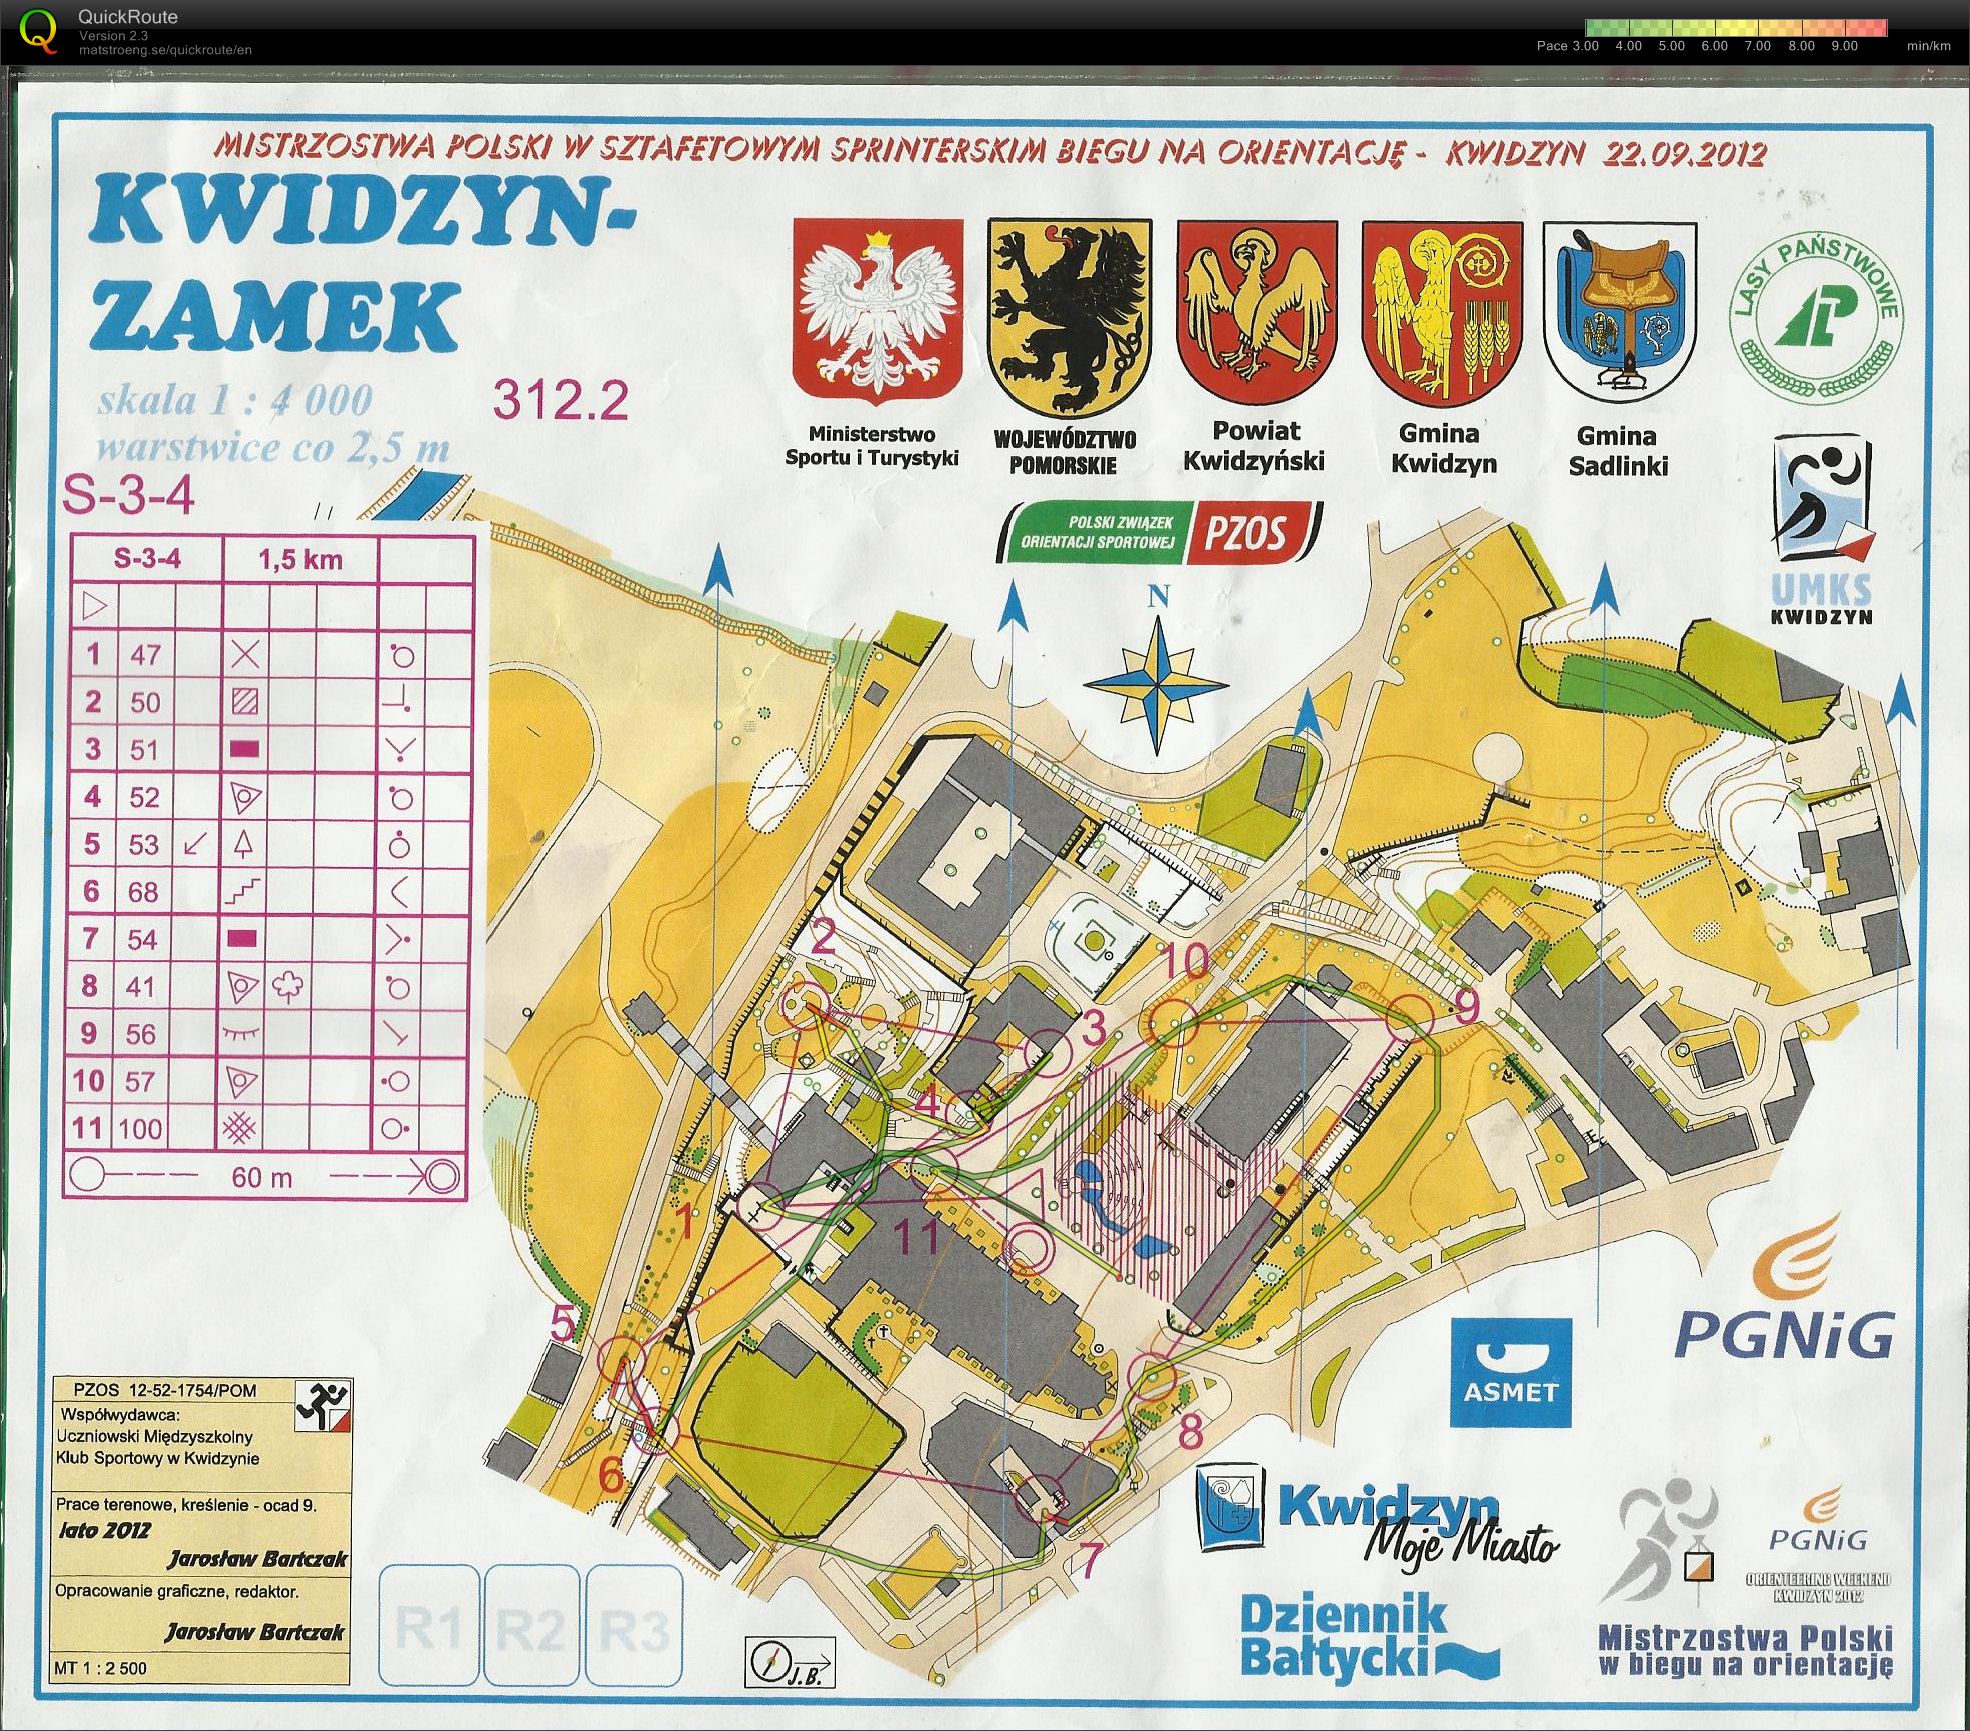 Z150 - Mistrzostwa Polski - sztafety sprinterskie (22.09.2012)